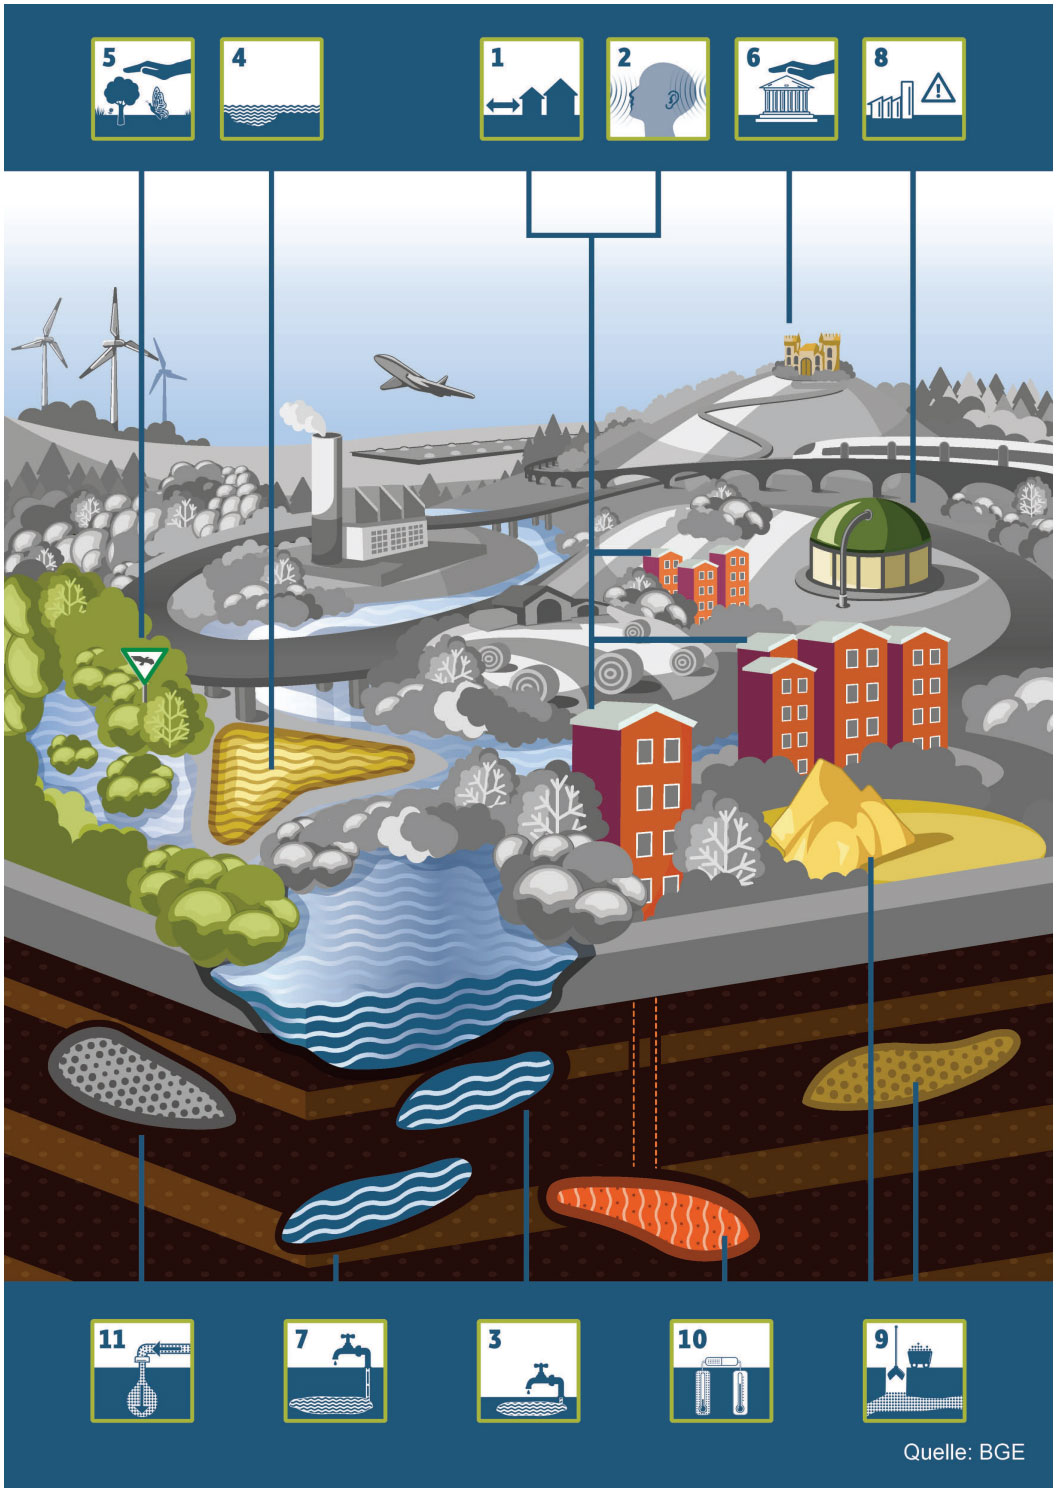 Die Infografik zeigt eine stilisierte Landschaft mit Gebäuden, Gewässern sowie Infrastruktur und ordnet die planungswissenschaftlichen Abwägungskriterien zu. 